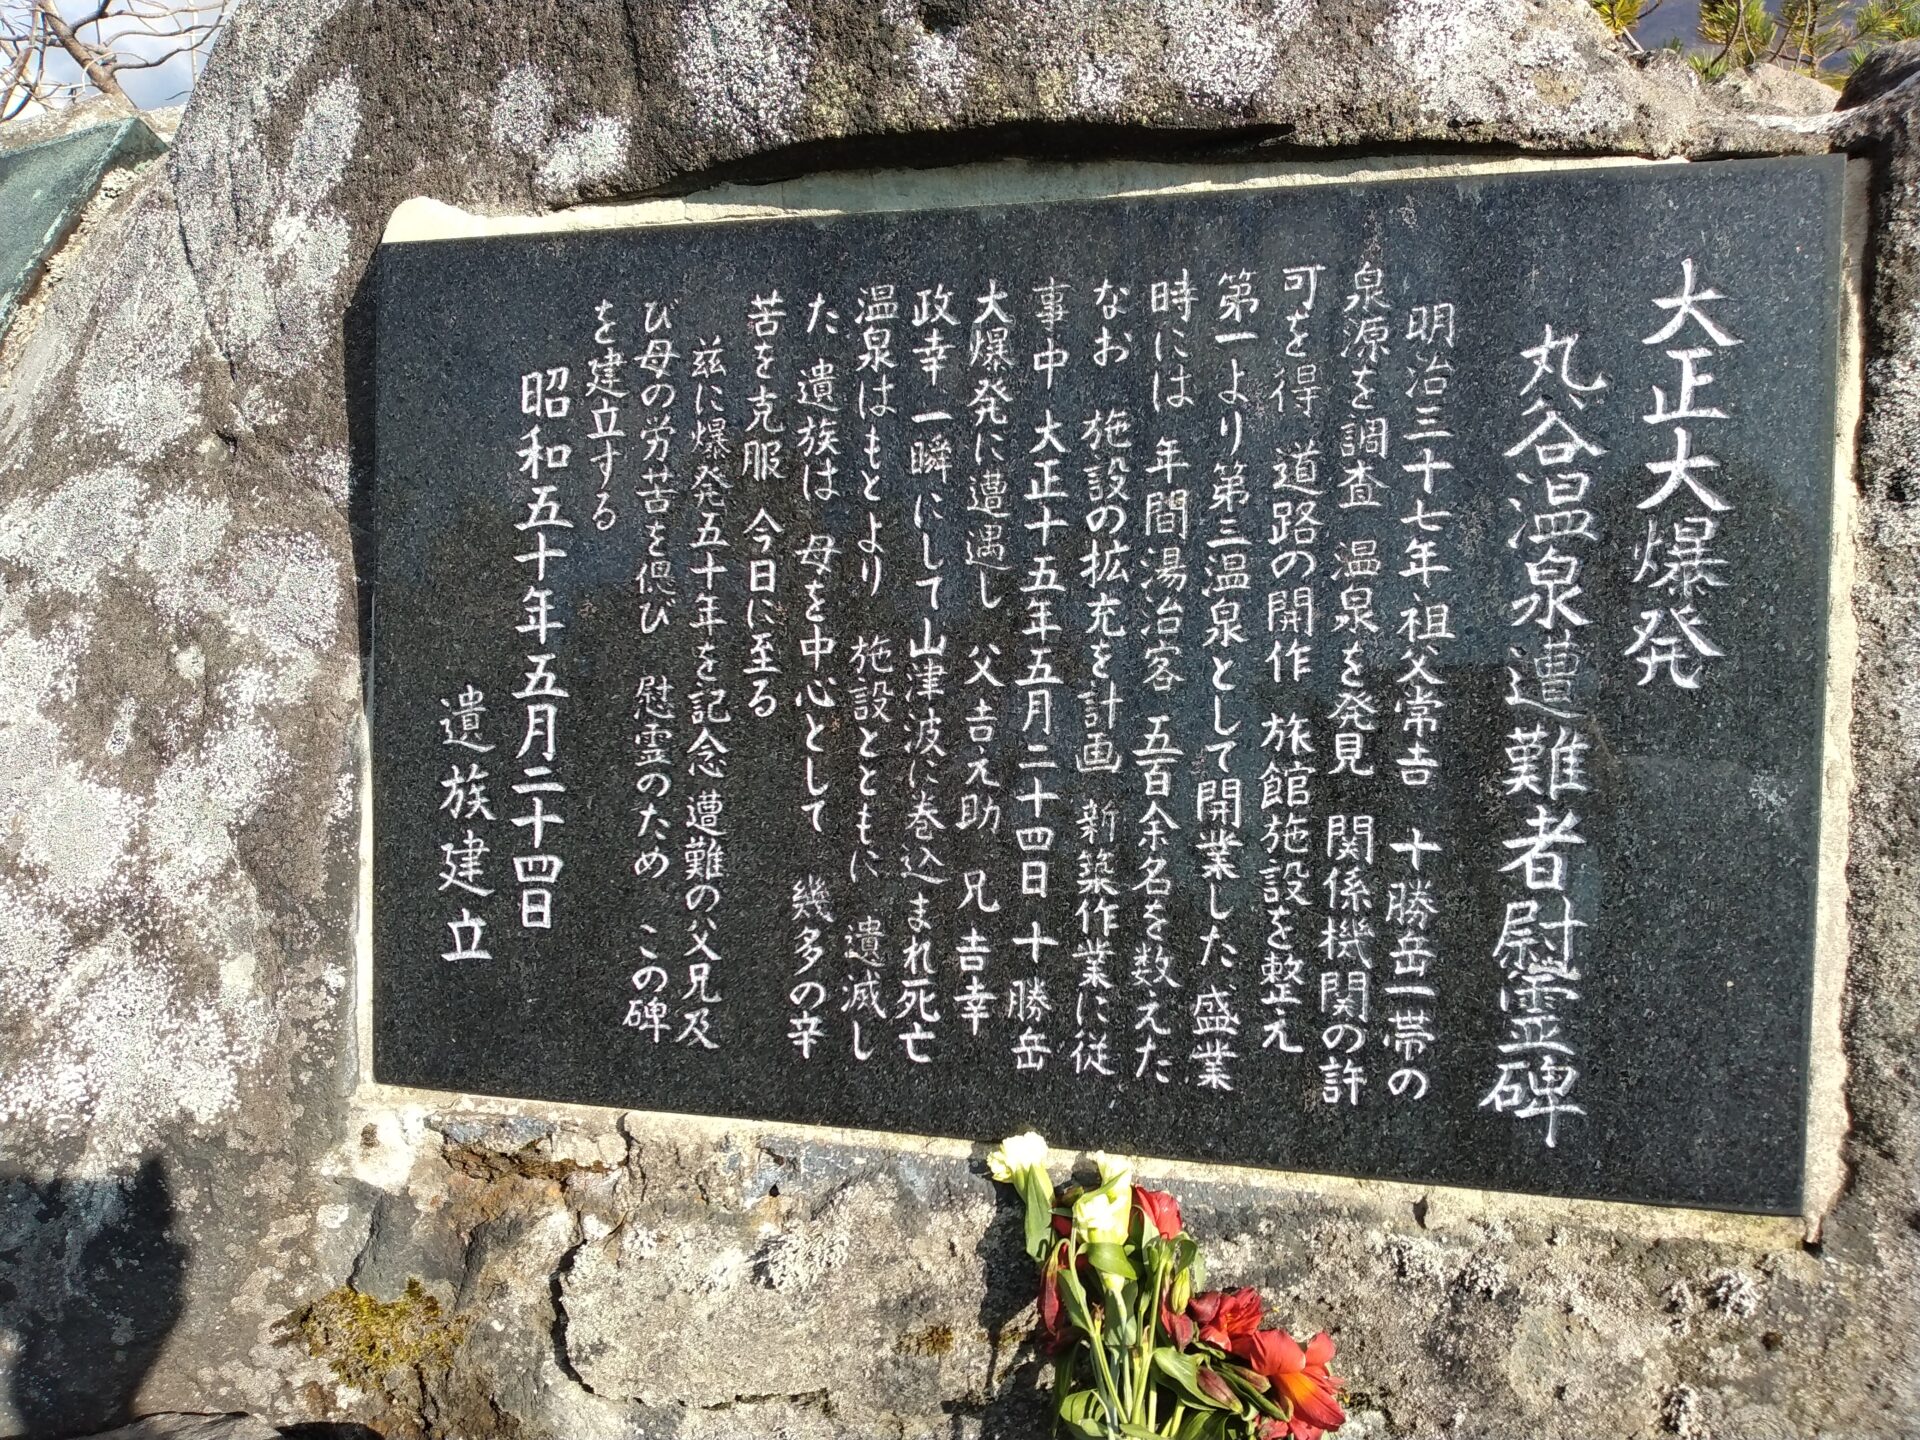 ｜北海道｜遺族の強い想いが碑に込められていました